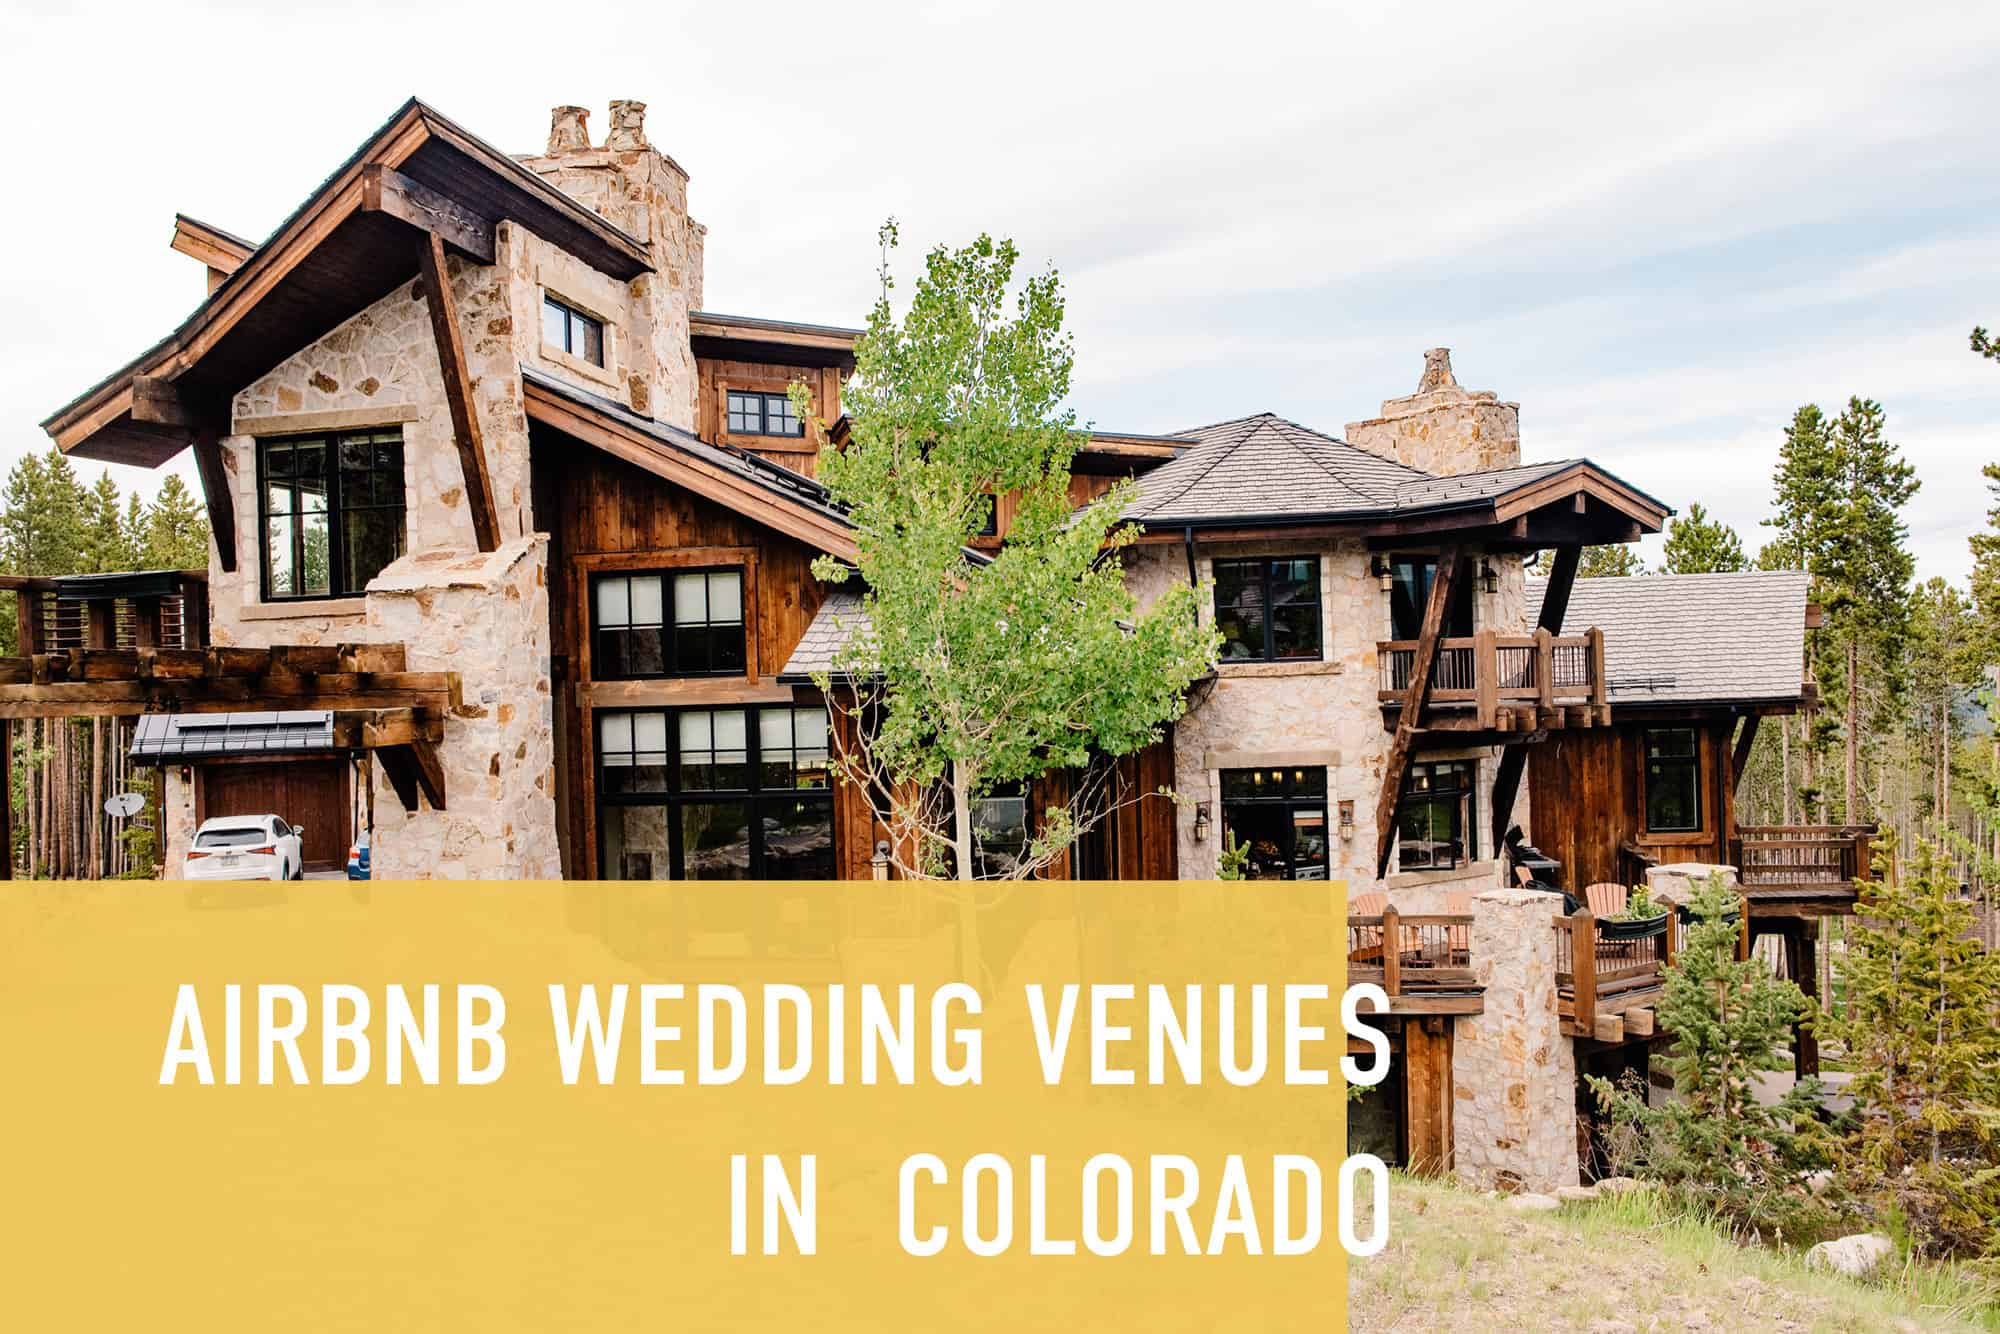 mountain home in Colorado with text "airbnb wedding venues in Colorado'"